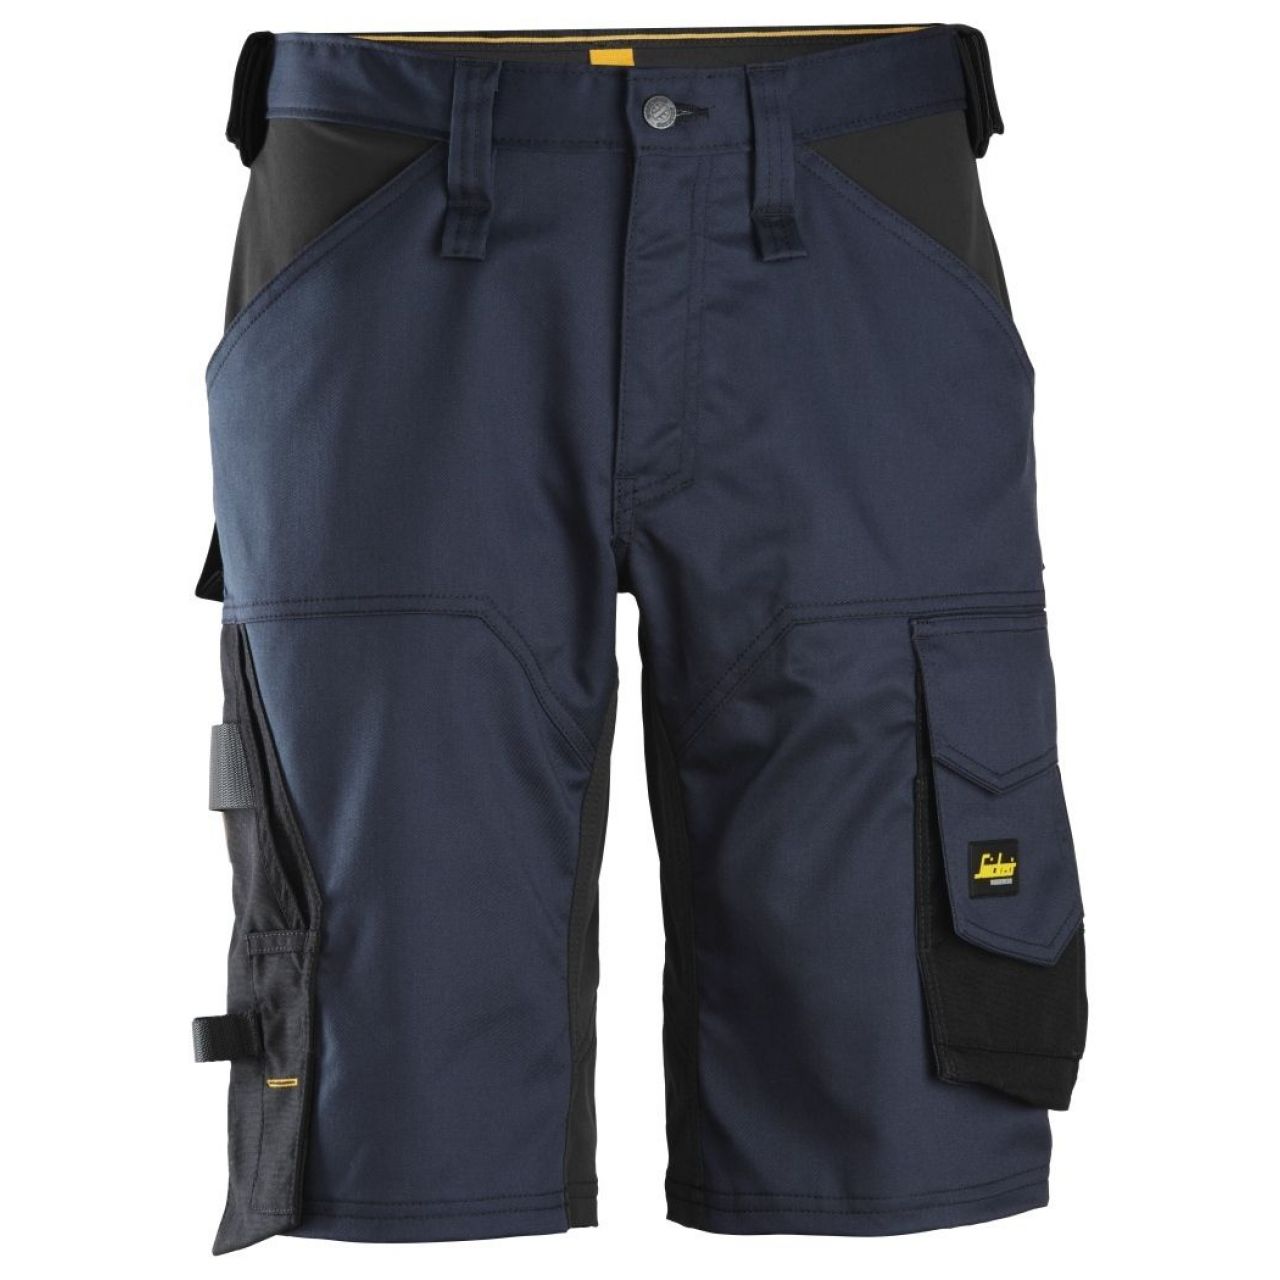 Pantalon corto elastico holgado AllroundWork azul marino-negro talla 064